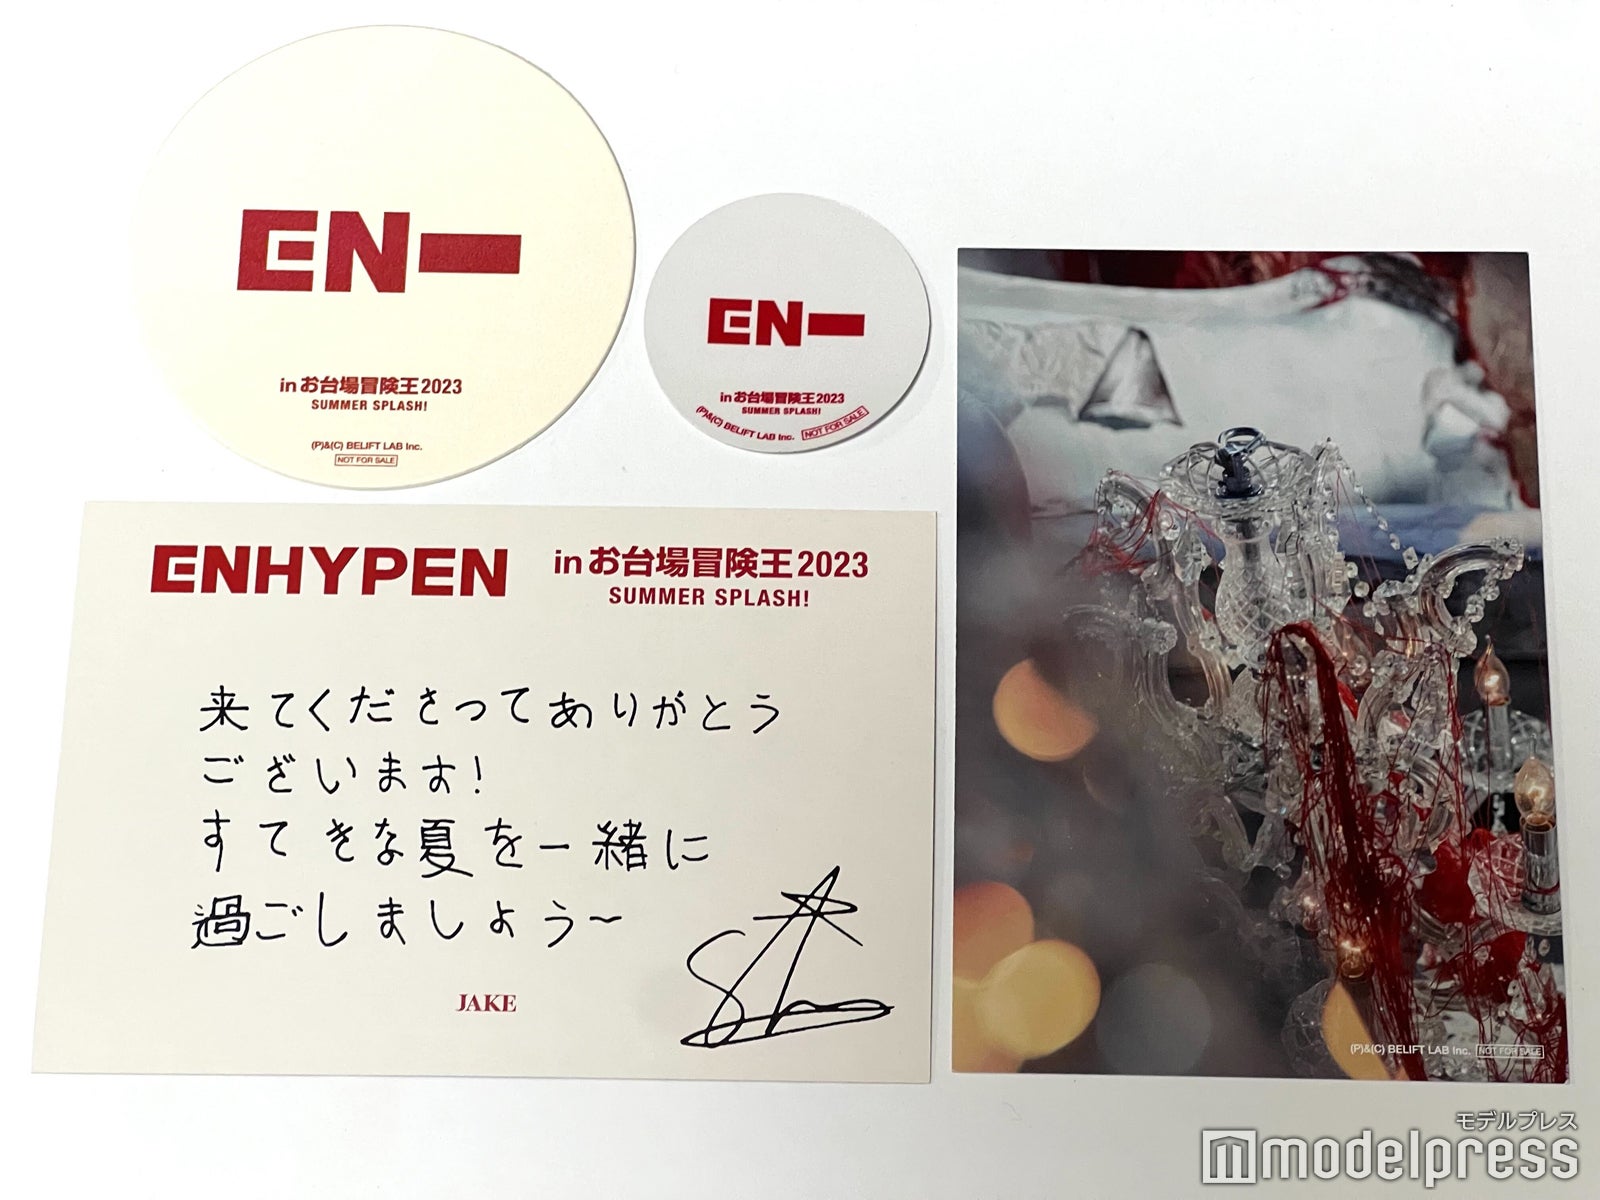 ENHYPEN「めざましライブ」で熱気溢れる日本初野外ステージ “コラボ 